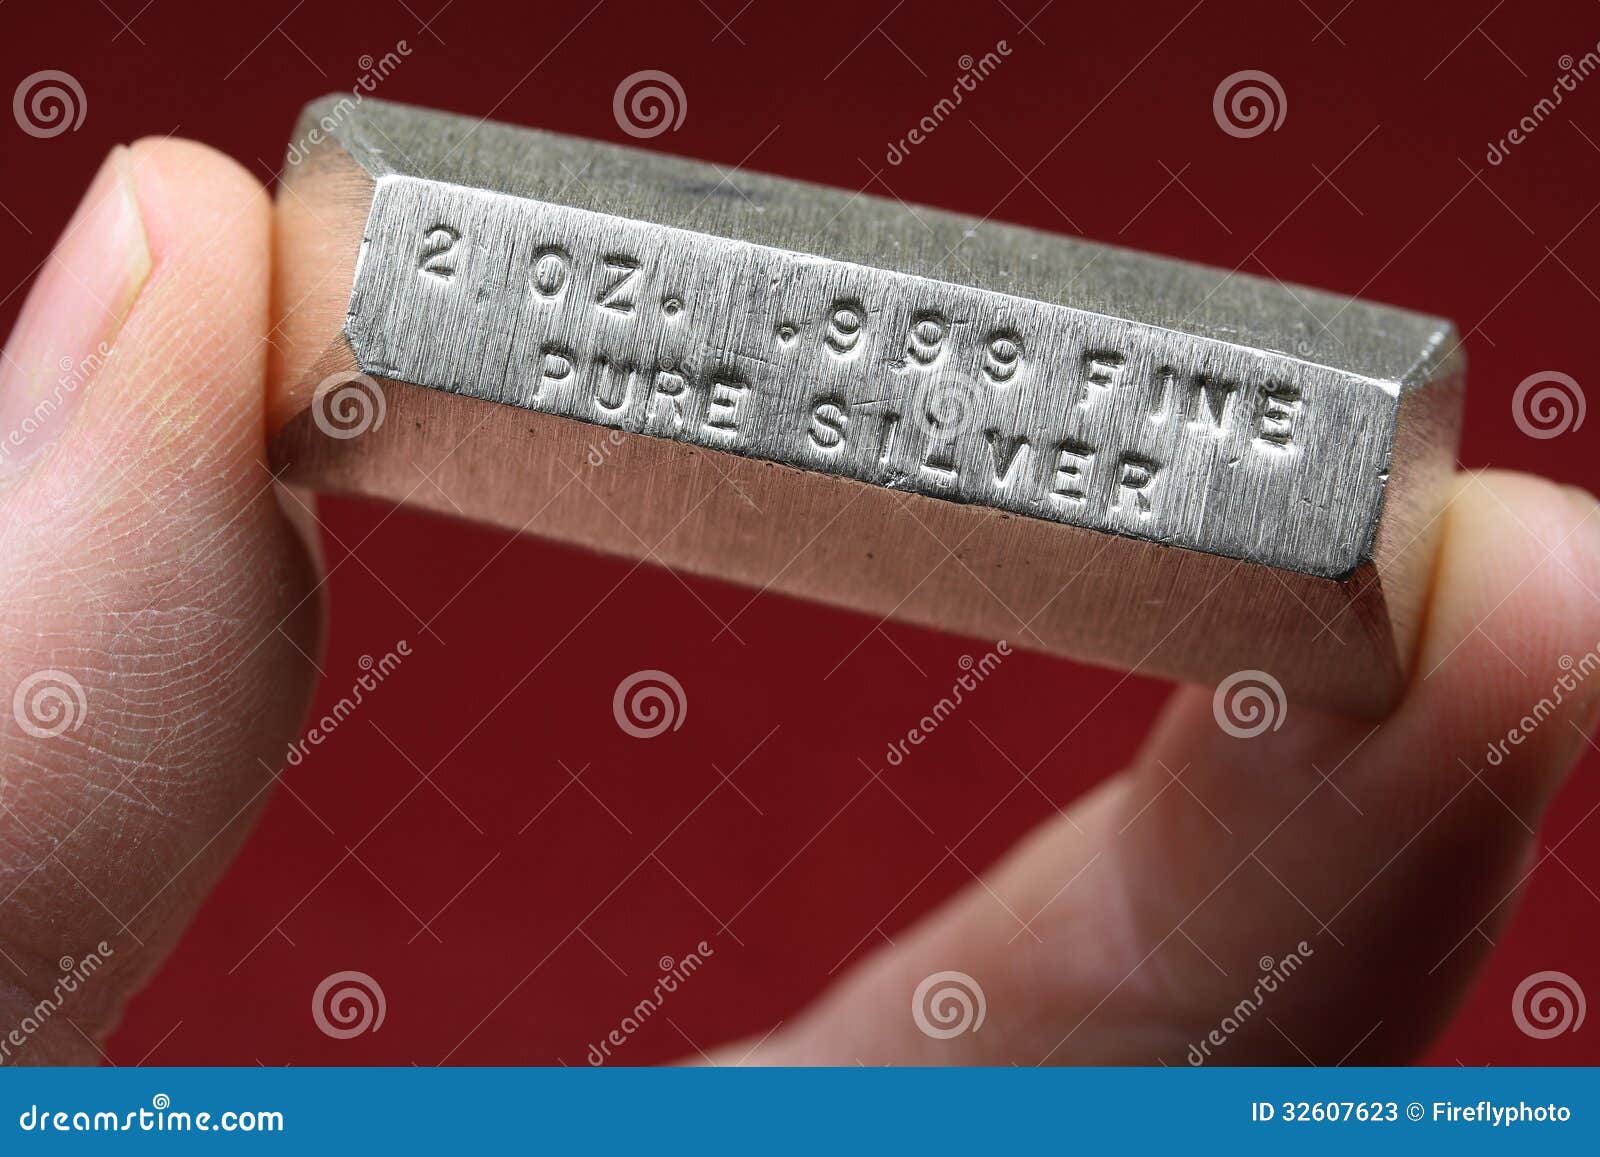 2 troy ounce silver bullion bar